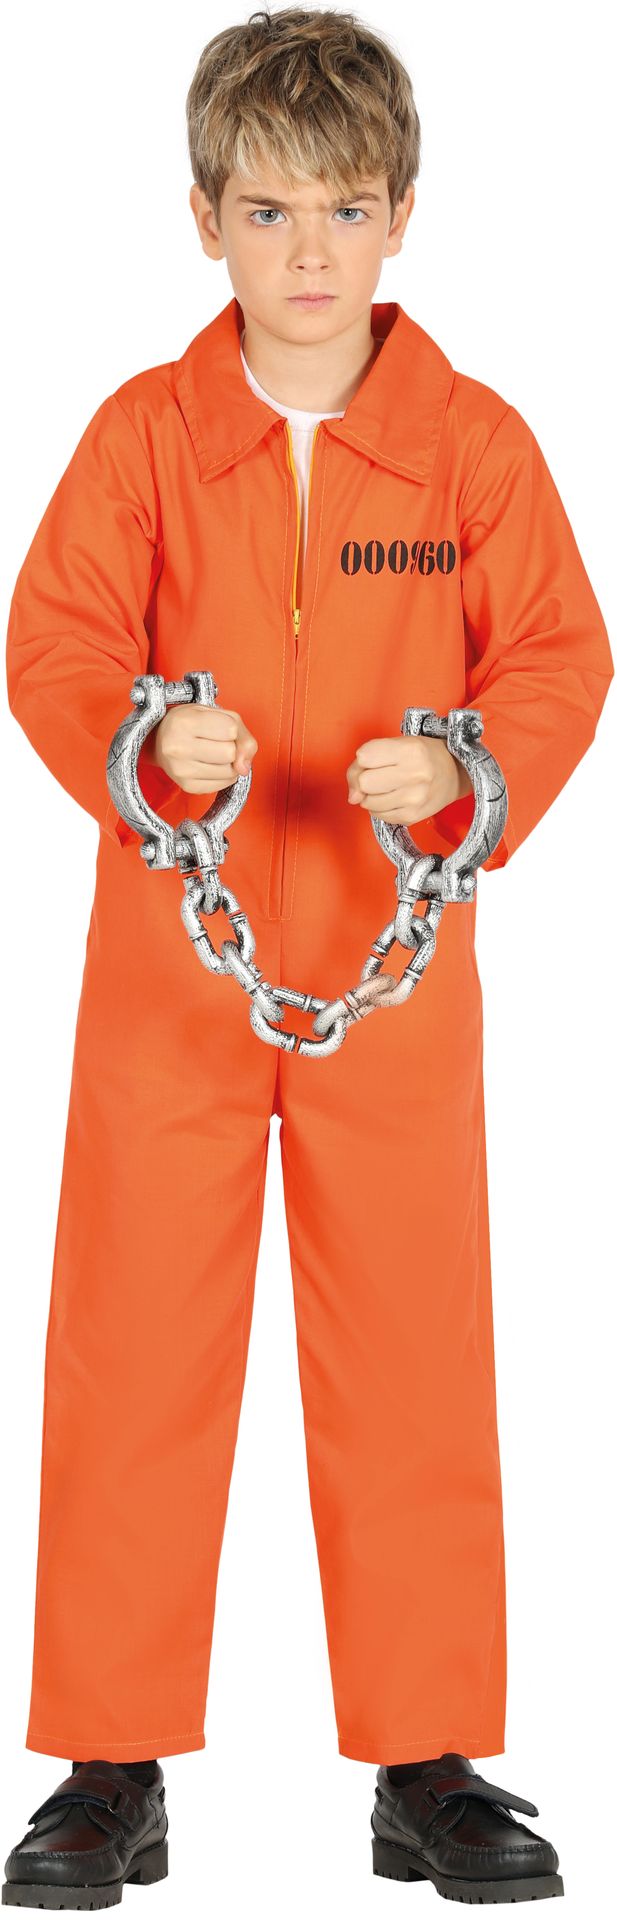 Gevangenen kostuum kind